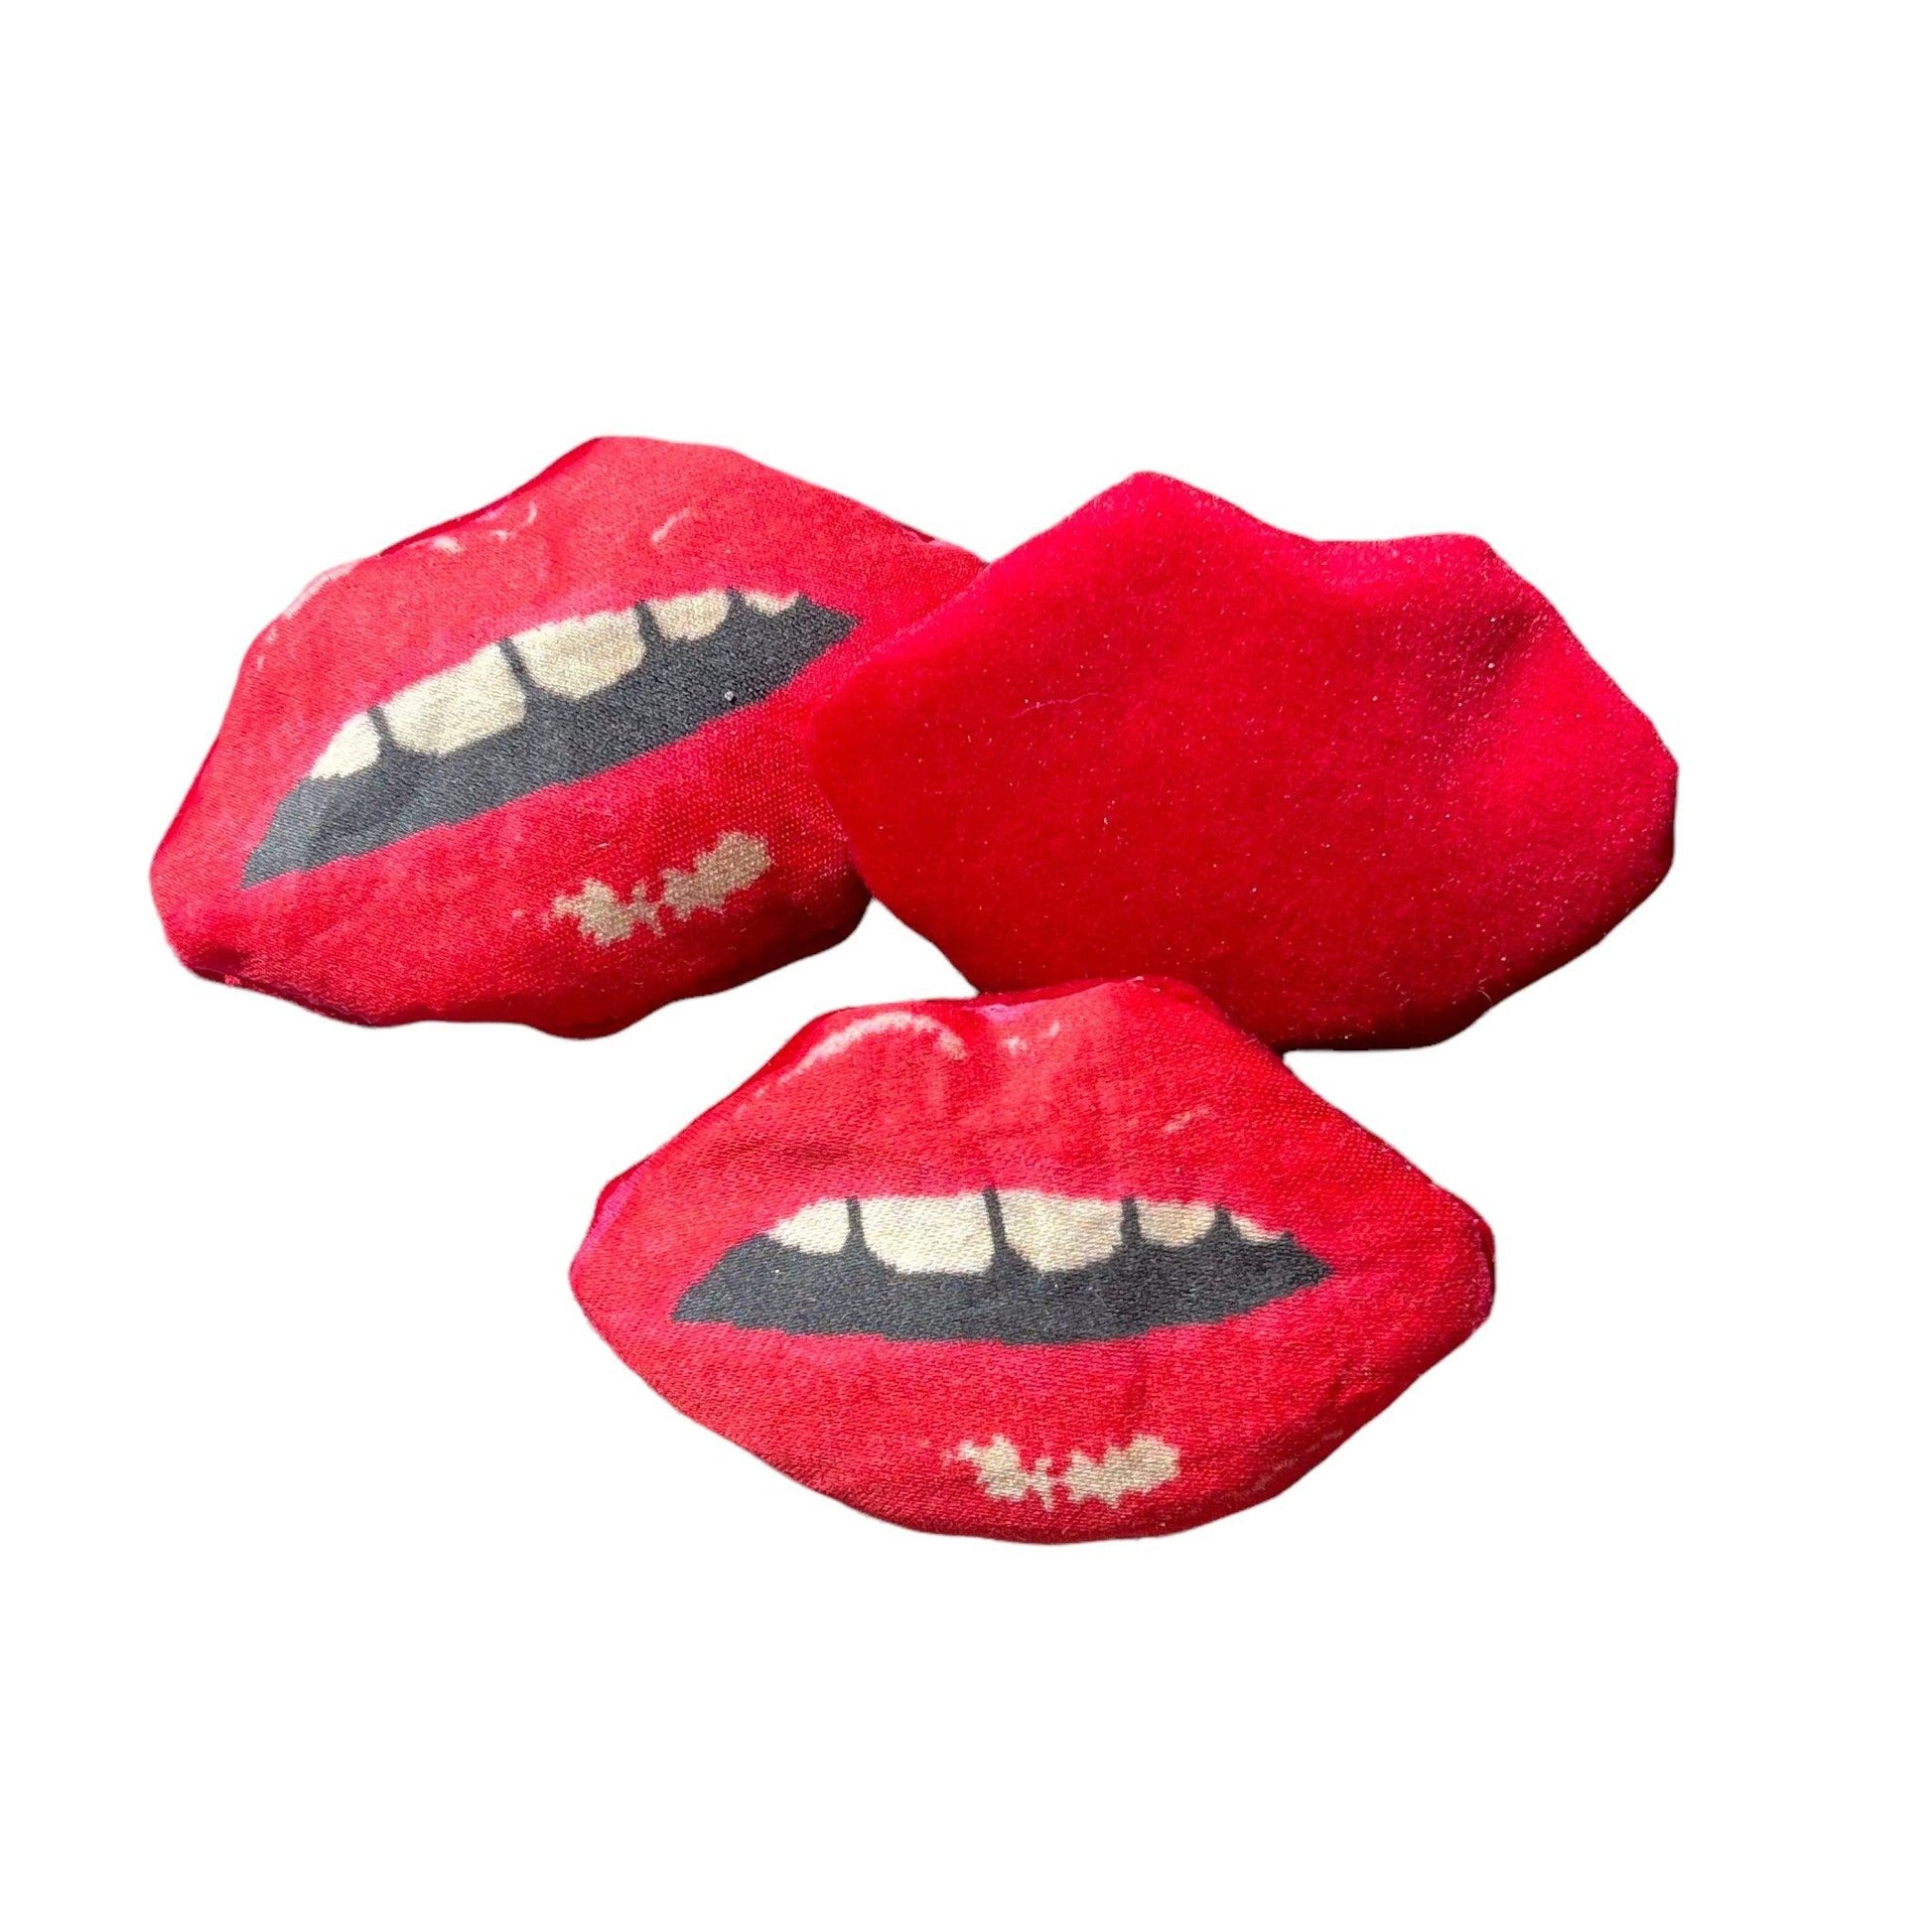  red lips-shaped lavender sachet